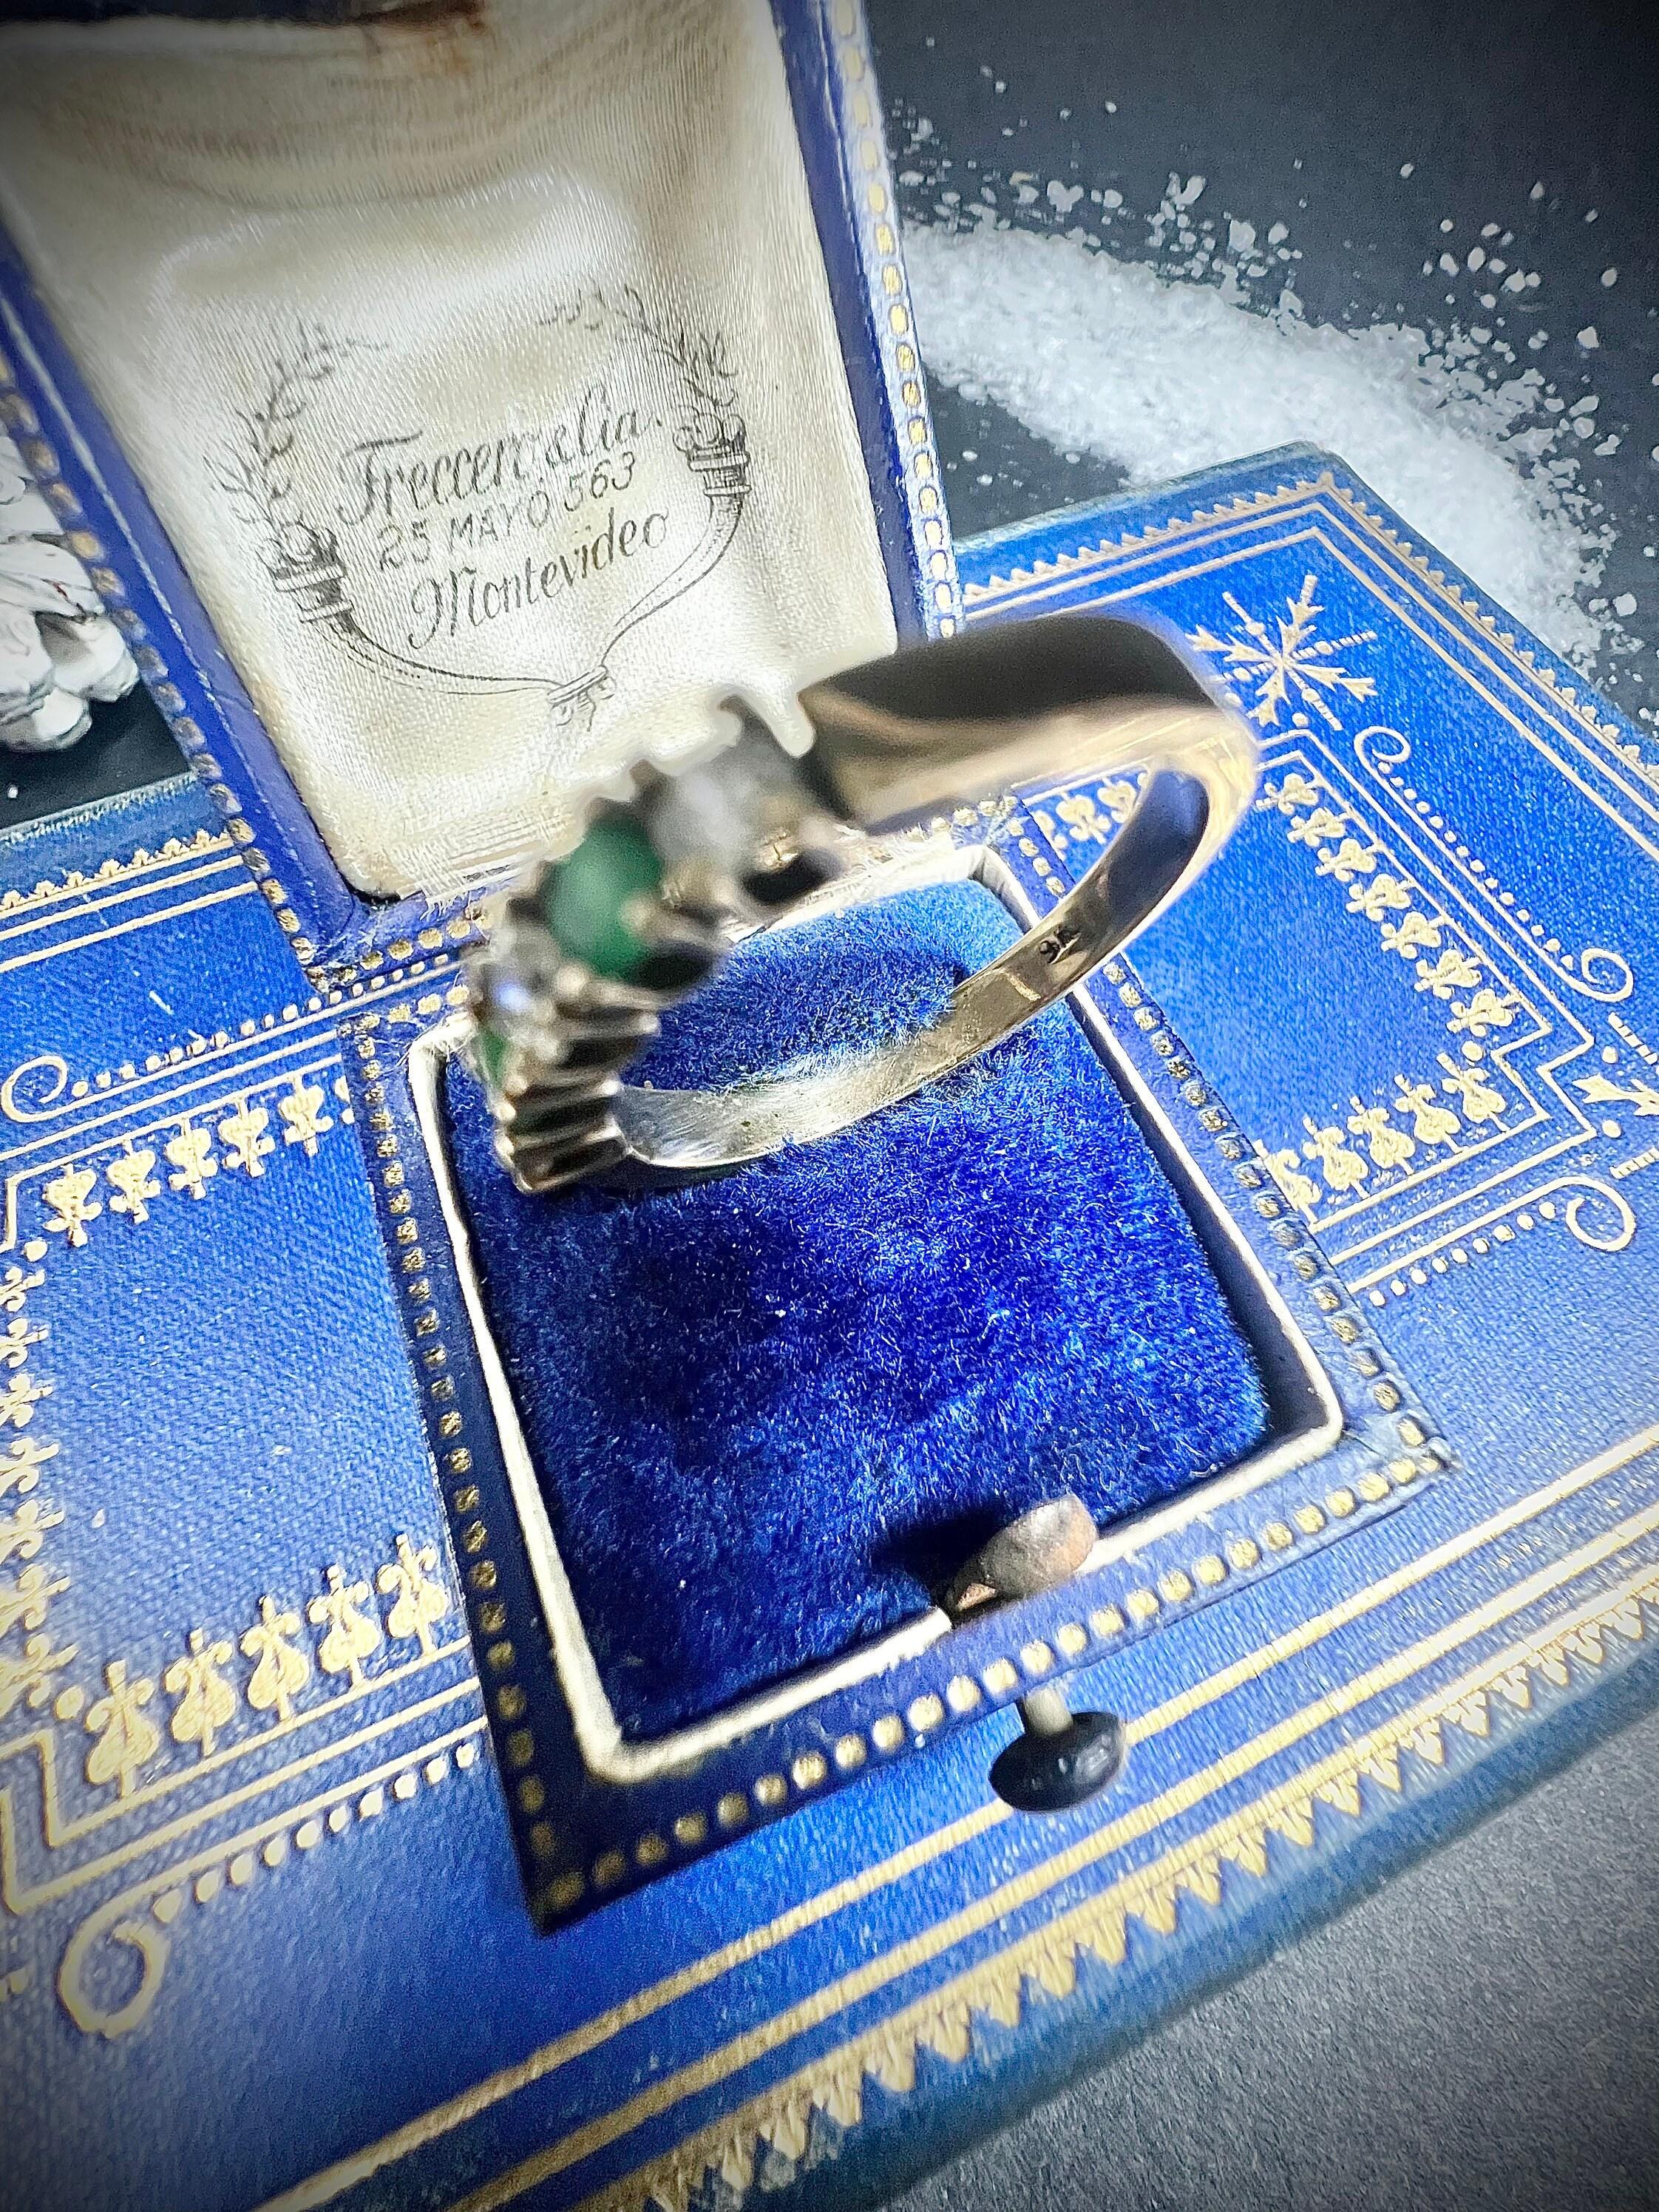 Vintage Smaragd & Diamant Ring 

9ct Gold gestempelt 

CIRCA 1980er Jahre

Schöner Fünf-Stein-Ring im Vintage-Stil. Mit wunderschönen, sich abwechselnden, natürlichen Smaragden und Diamanten besetzt. Eingefasst in ein Band aus 9 Karat Gelbgold.